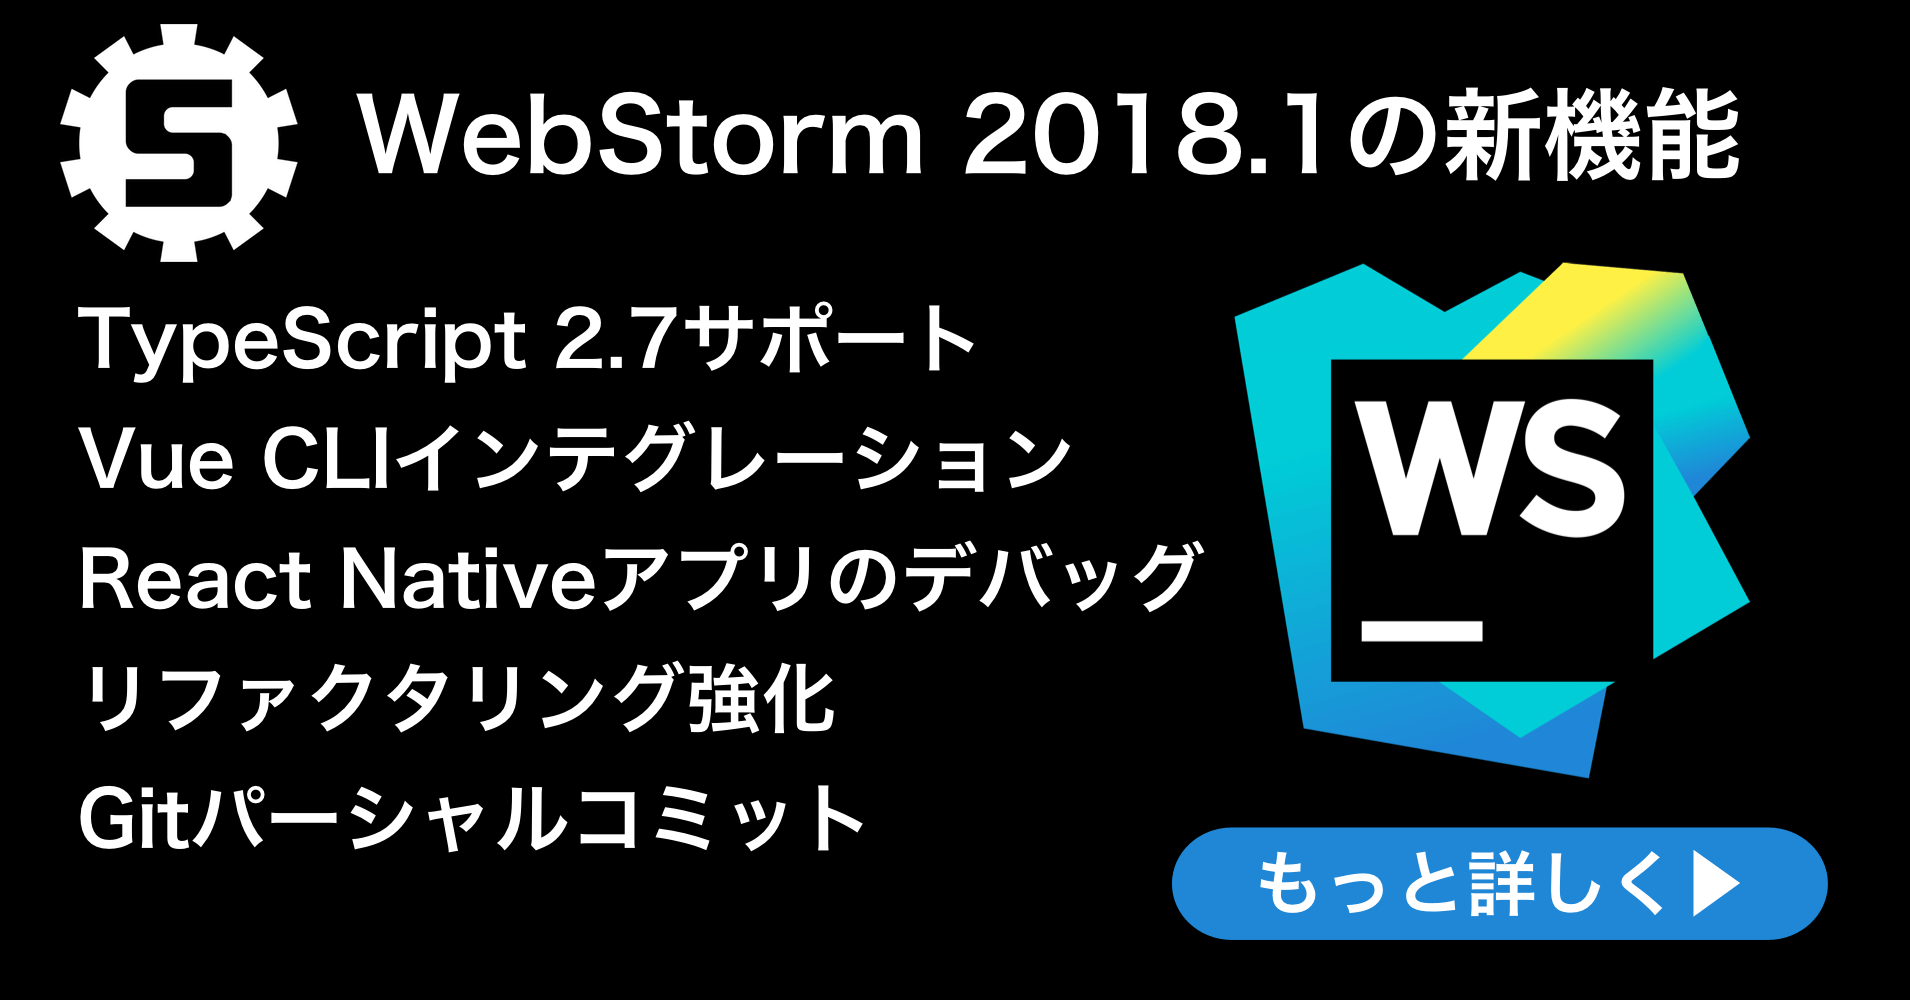 WebStorm 2018.1リリース